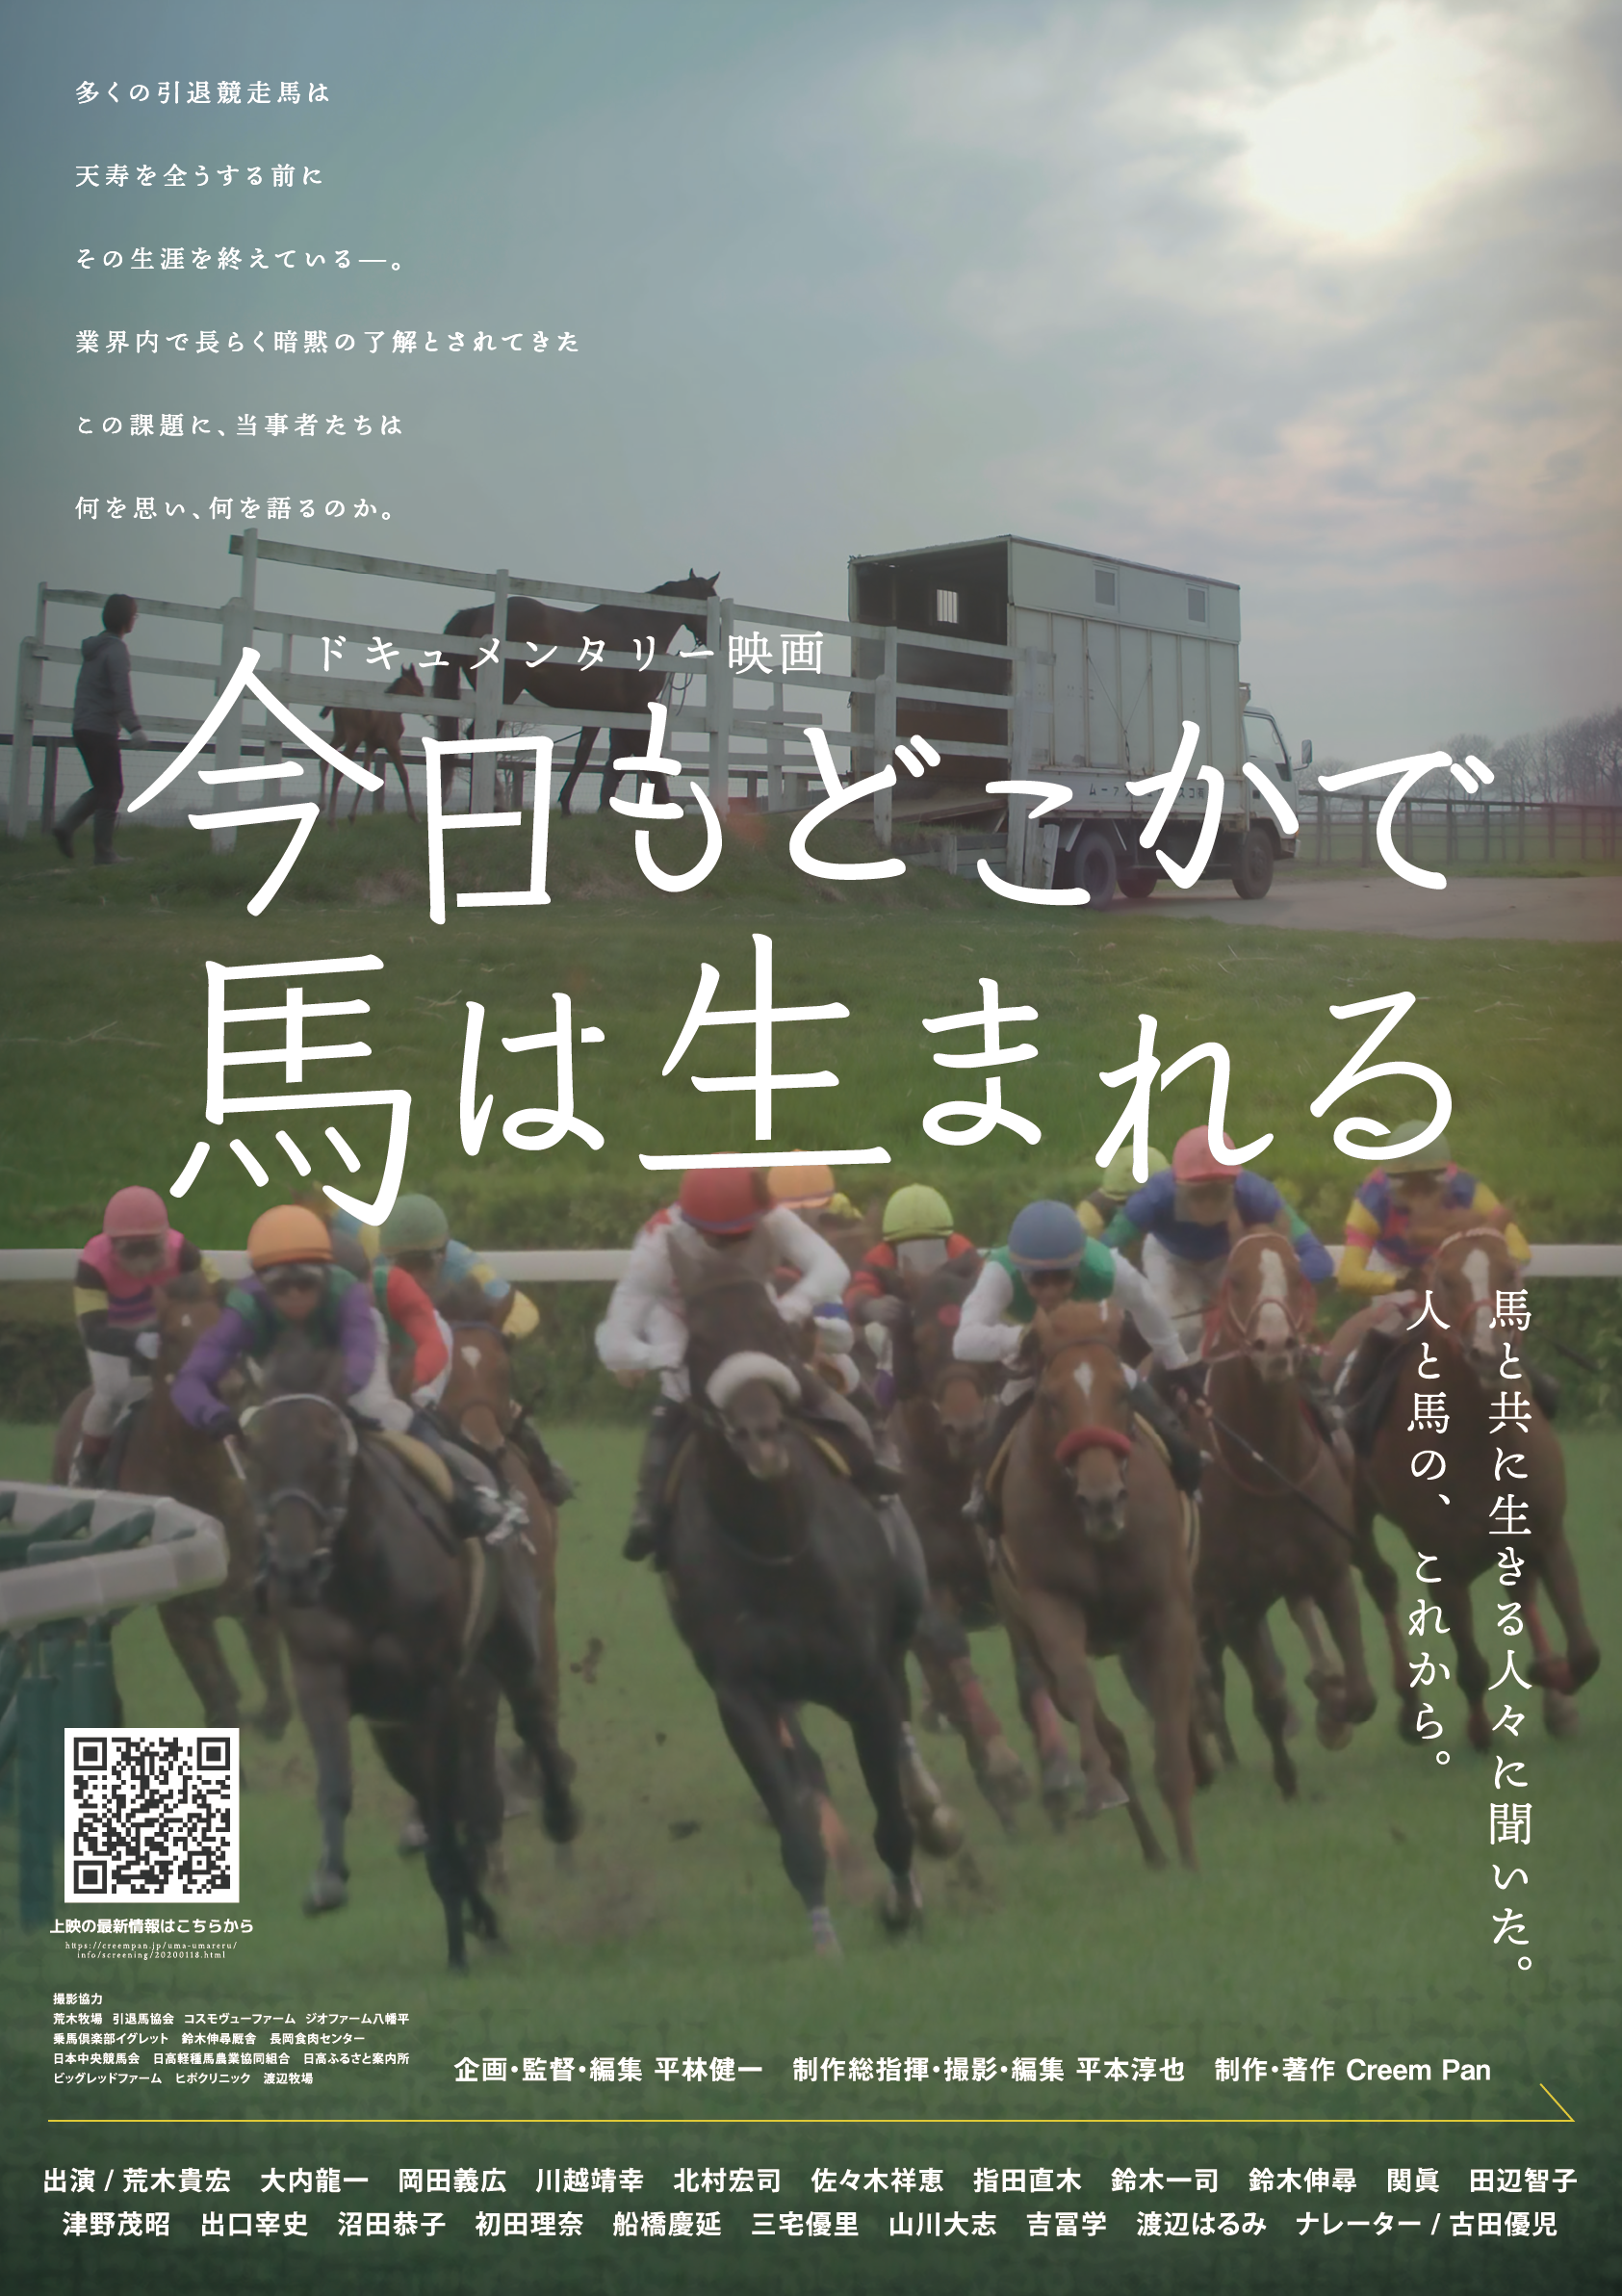 【TCC CAFE】映画「今日もどこかで馬は生まれる」上映会を開催します!